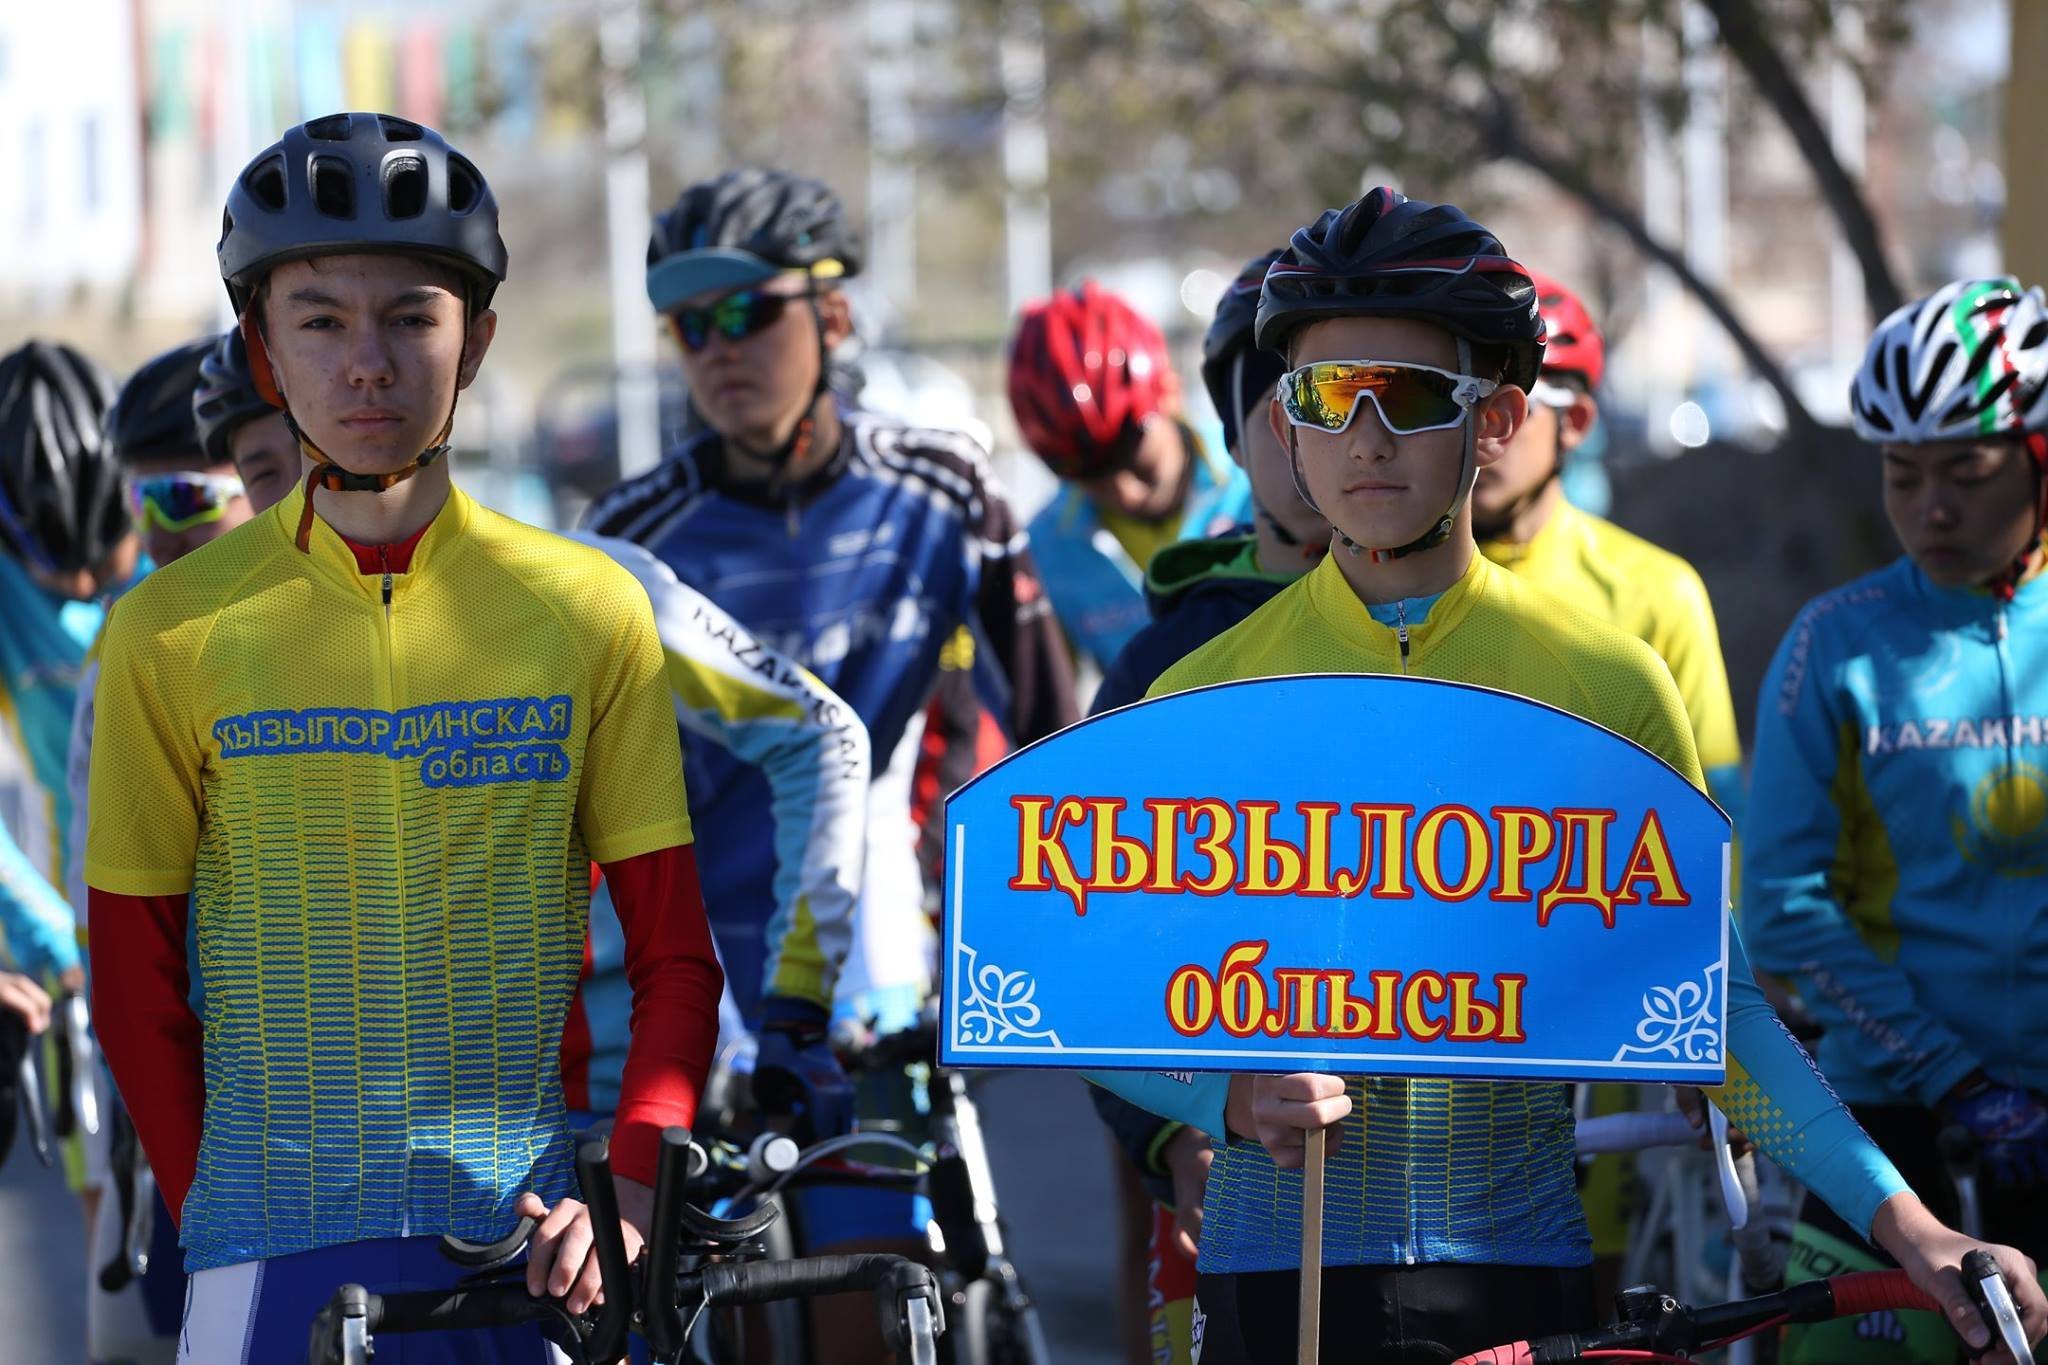 К. Искаков отметил достижения кызылординских спортсменов